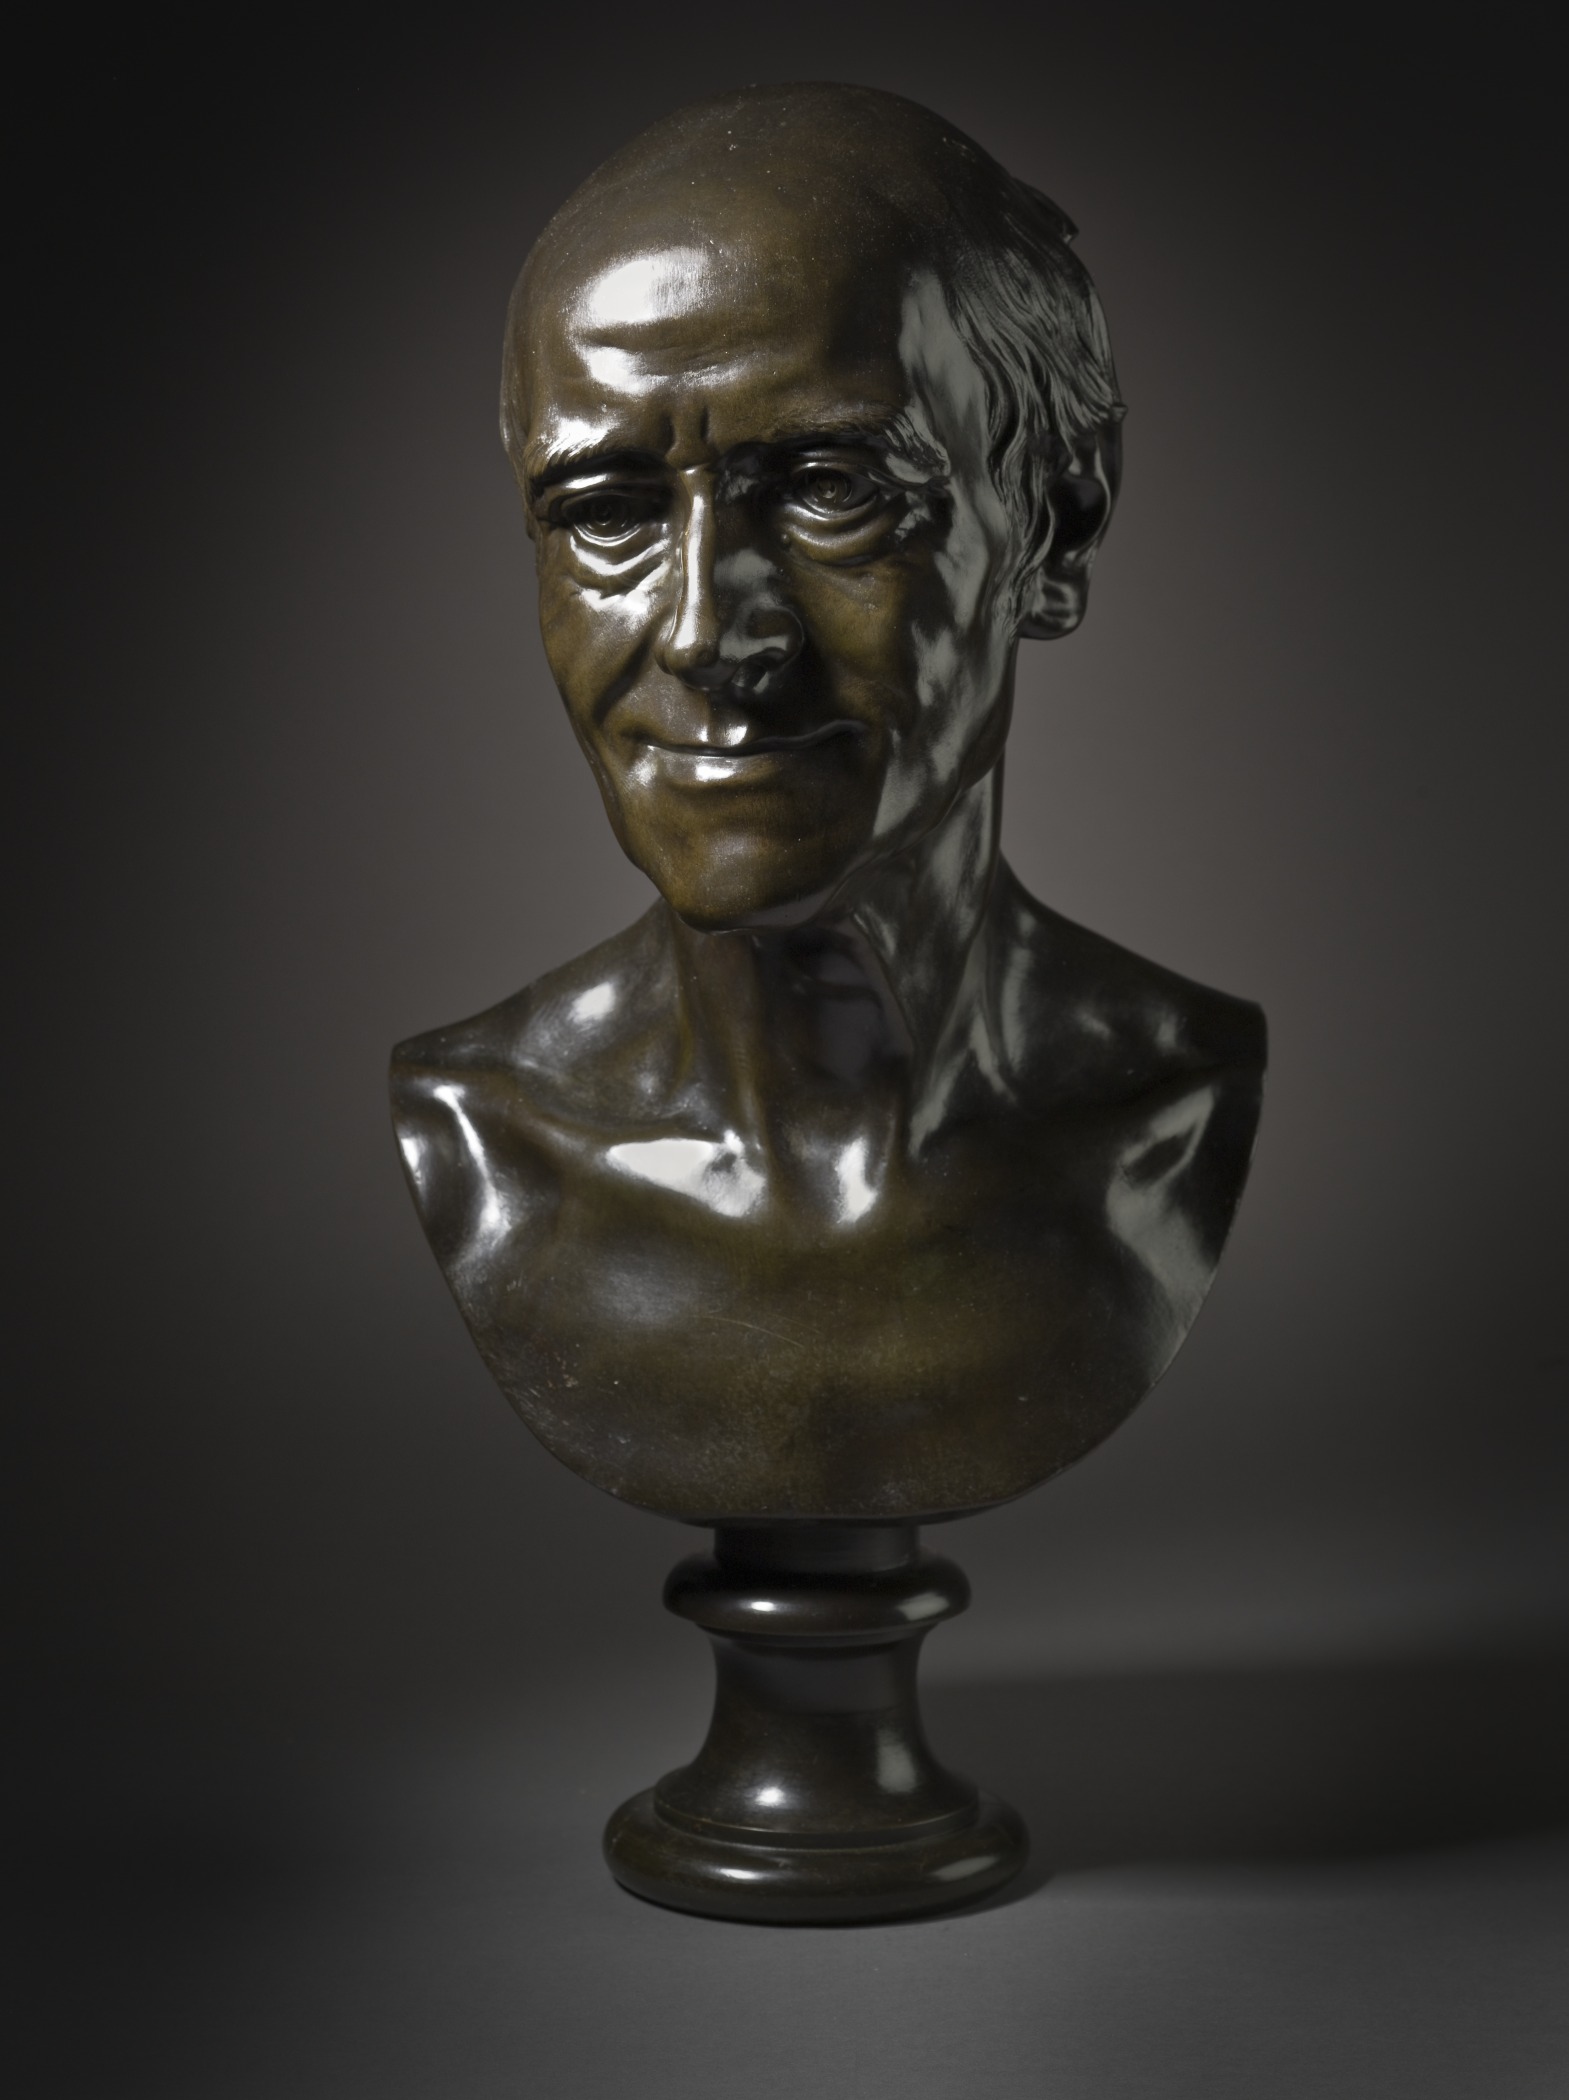 a bust - shaped bronze sculpture of president bill clinton